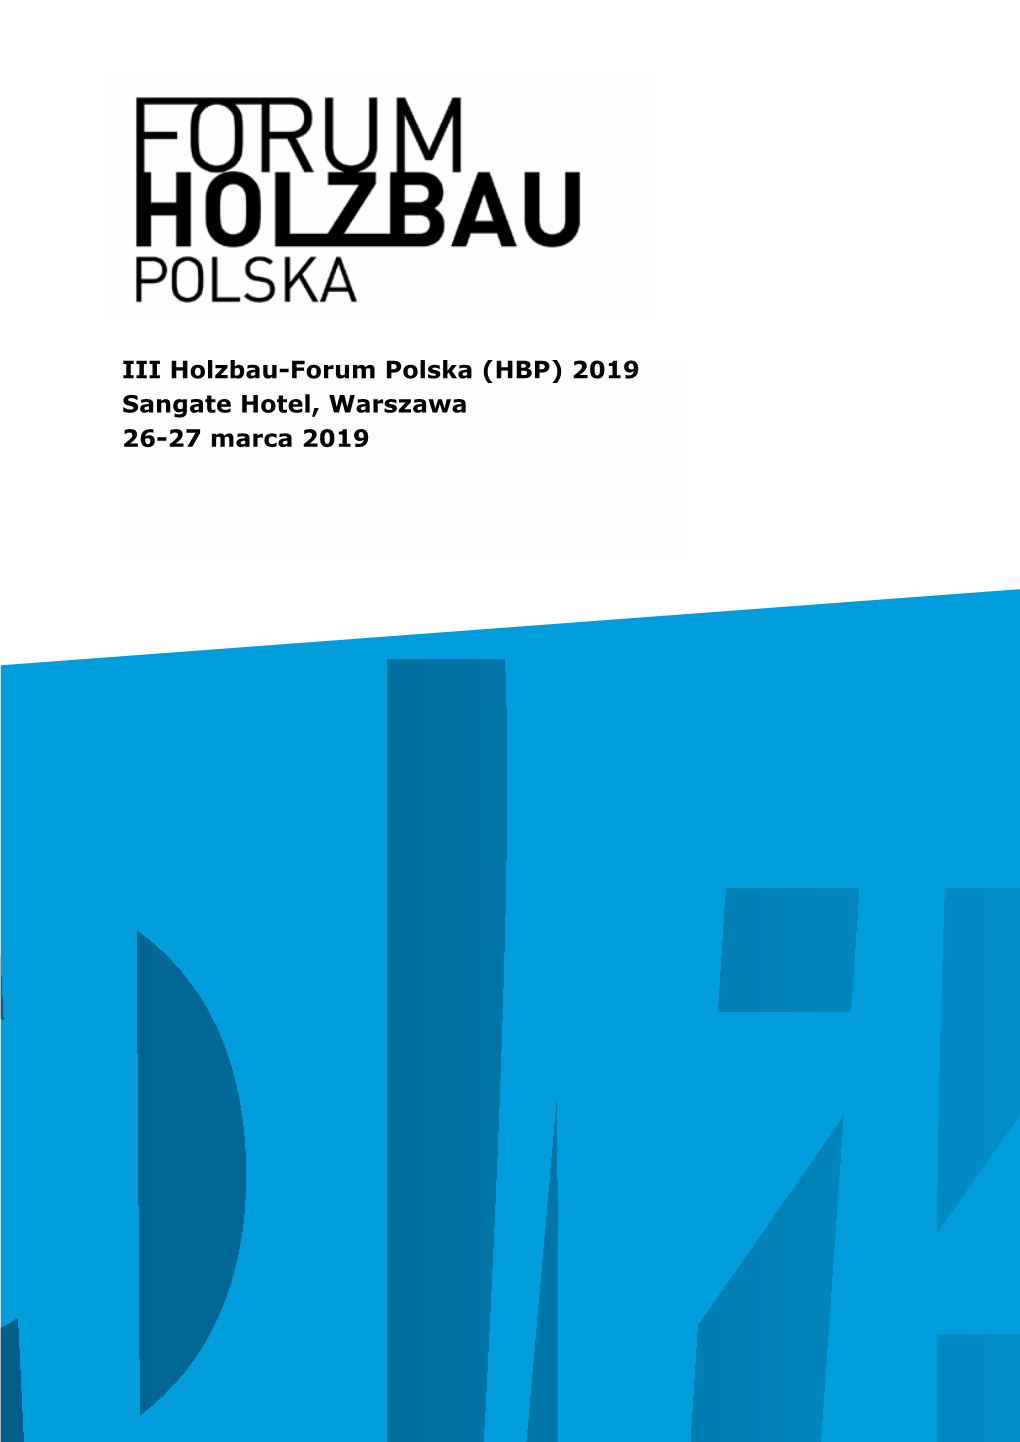 Forum | Bau Polska 17 Polska 17 IIII Holzbau-Forum Holzbau-Forum Polska Polska (HBP) (HBP) 2017 2019 Sangatewarsaw Plaza Hotel, Hotel, Warszawa Warsaw (PL) 26-2728